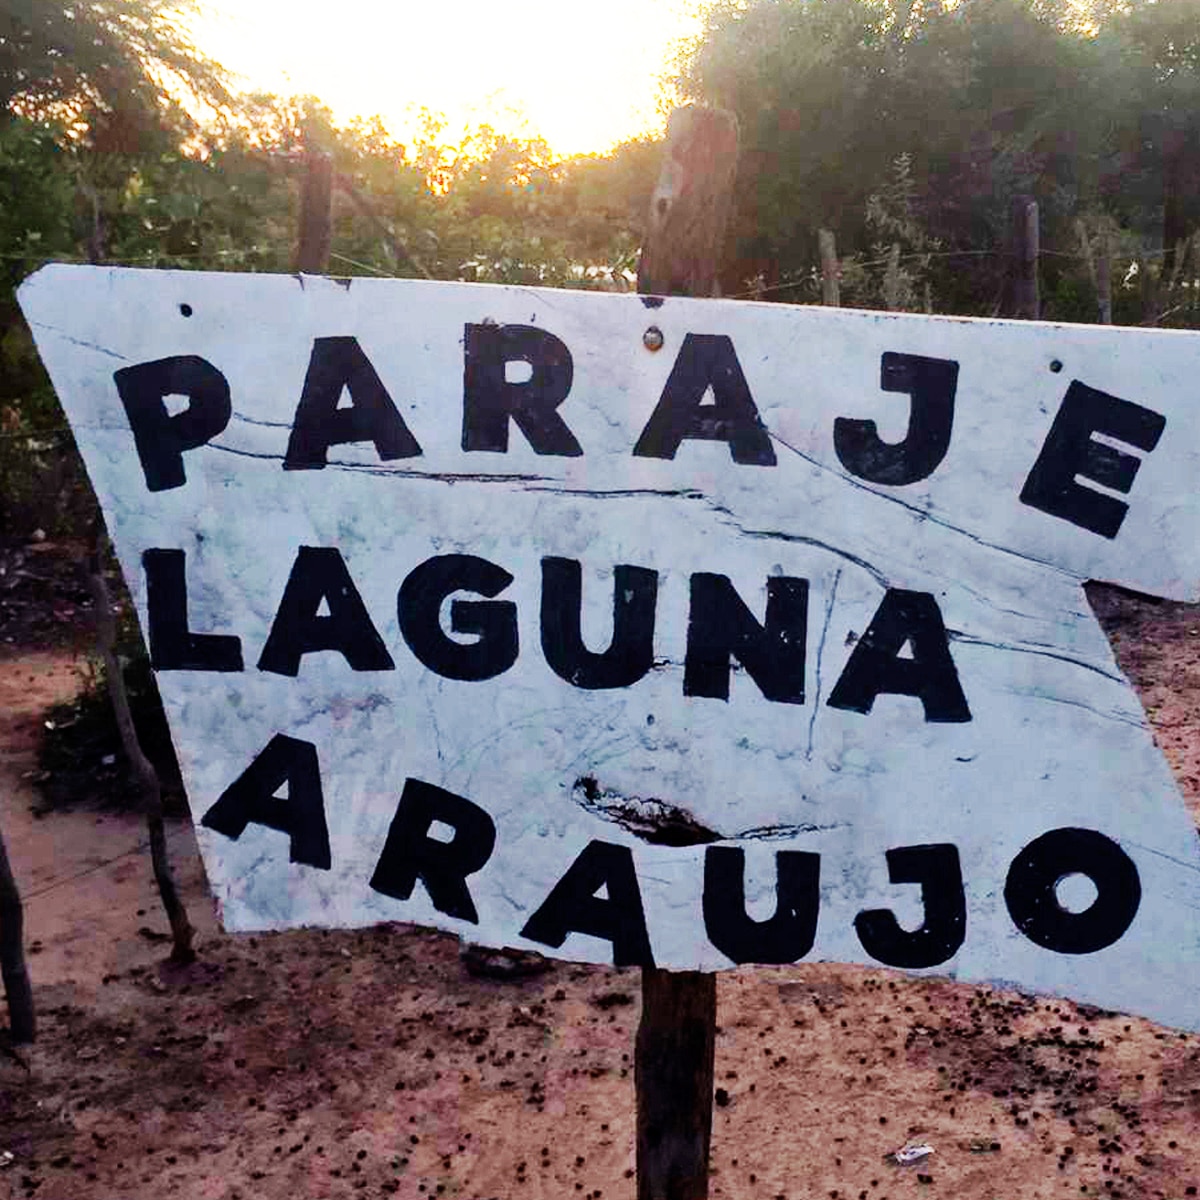 LagunaAraujo